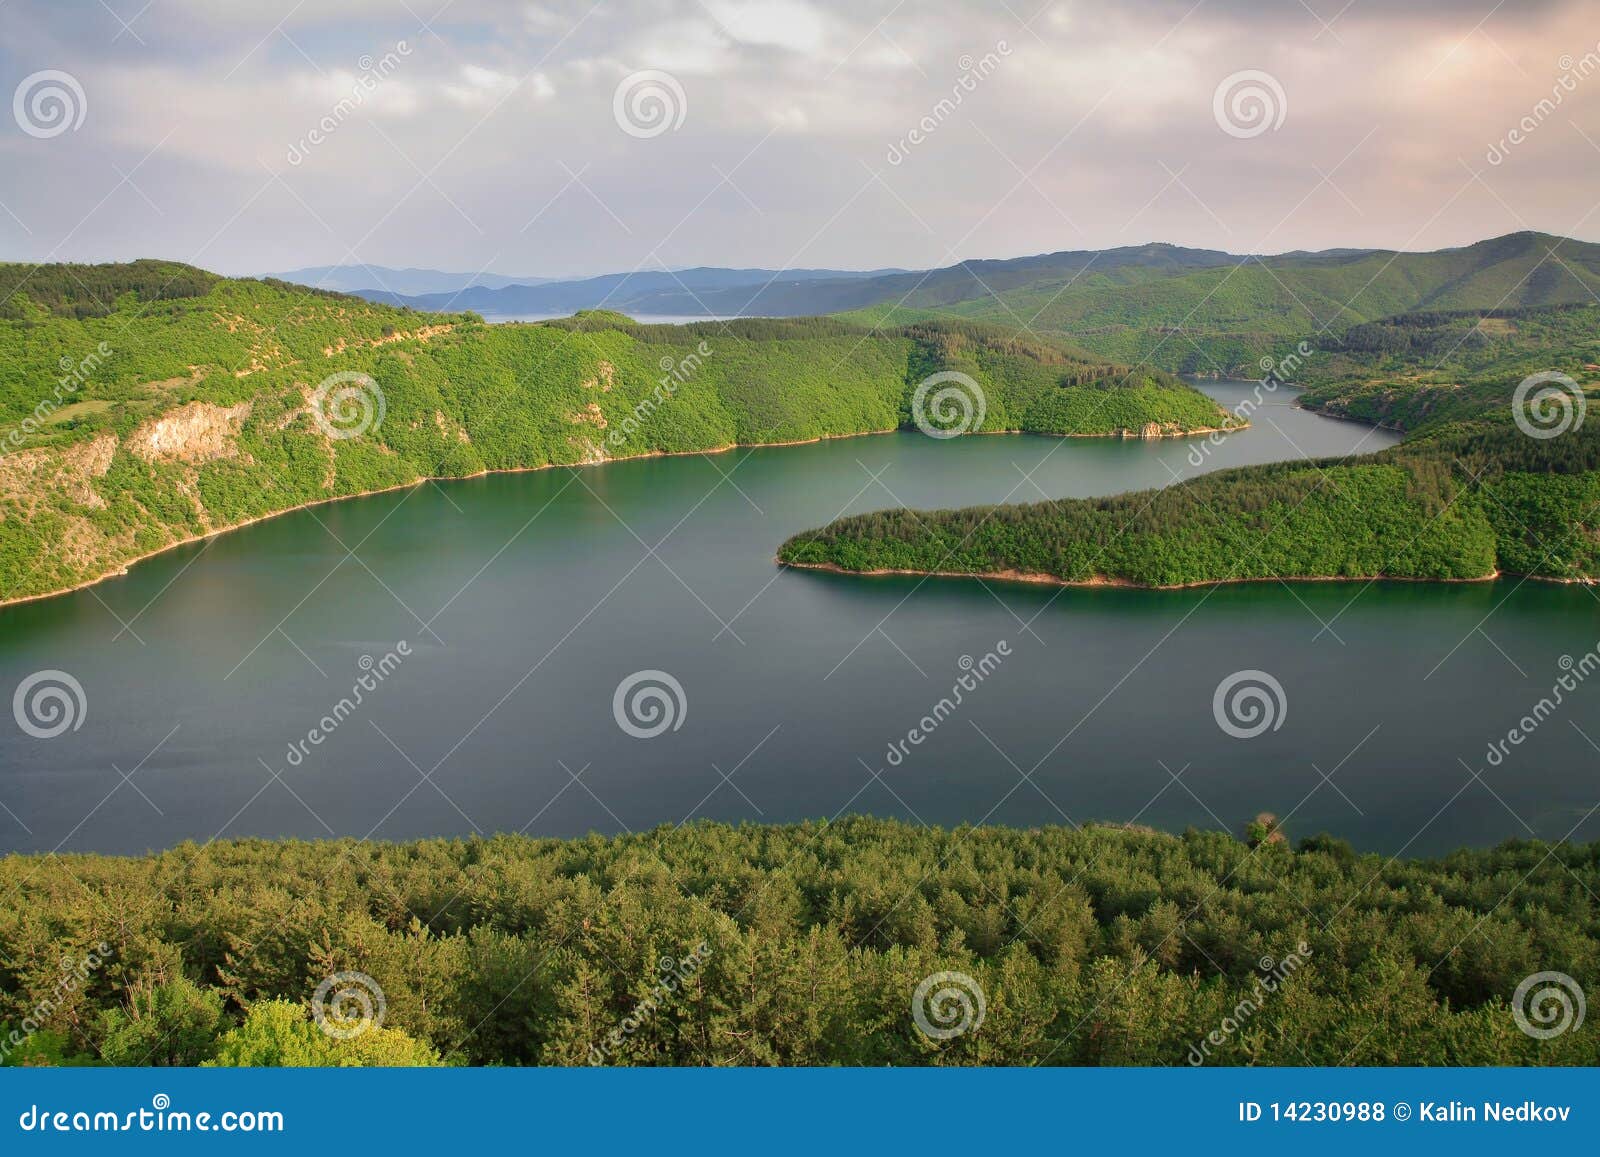 kardzhali reservoir